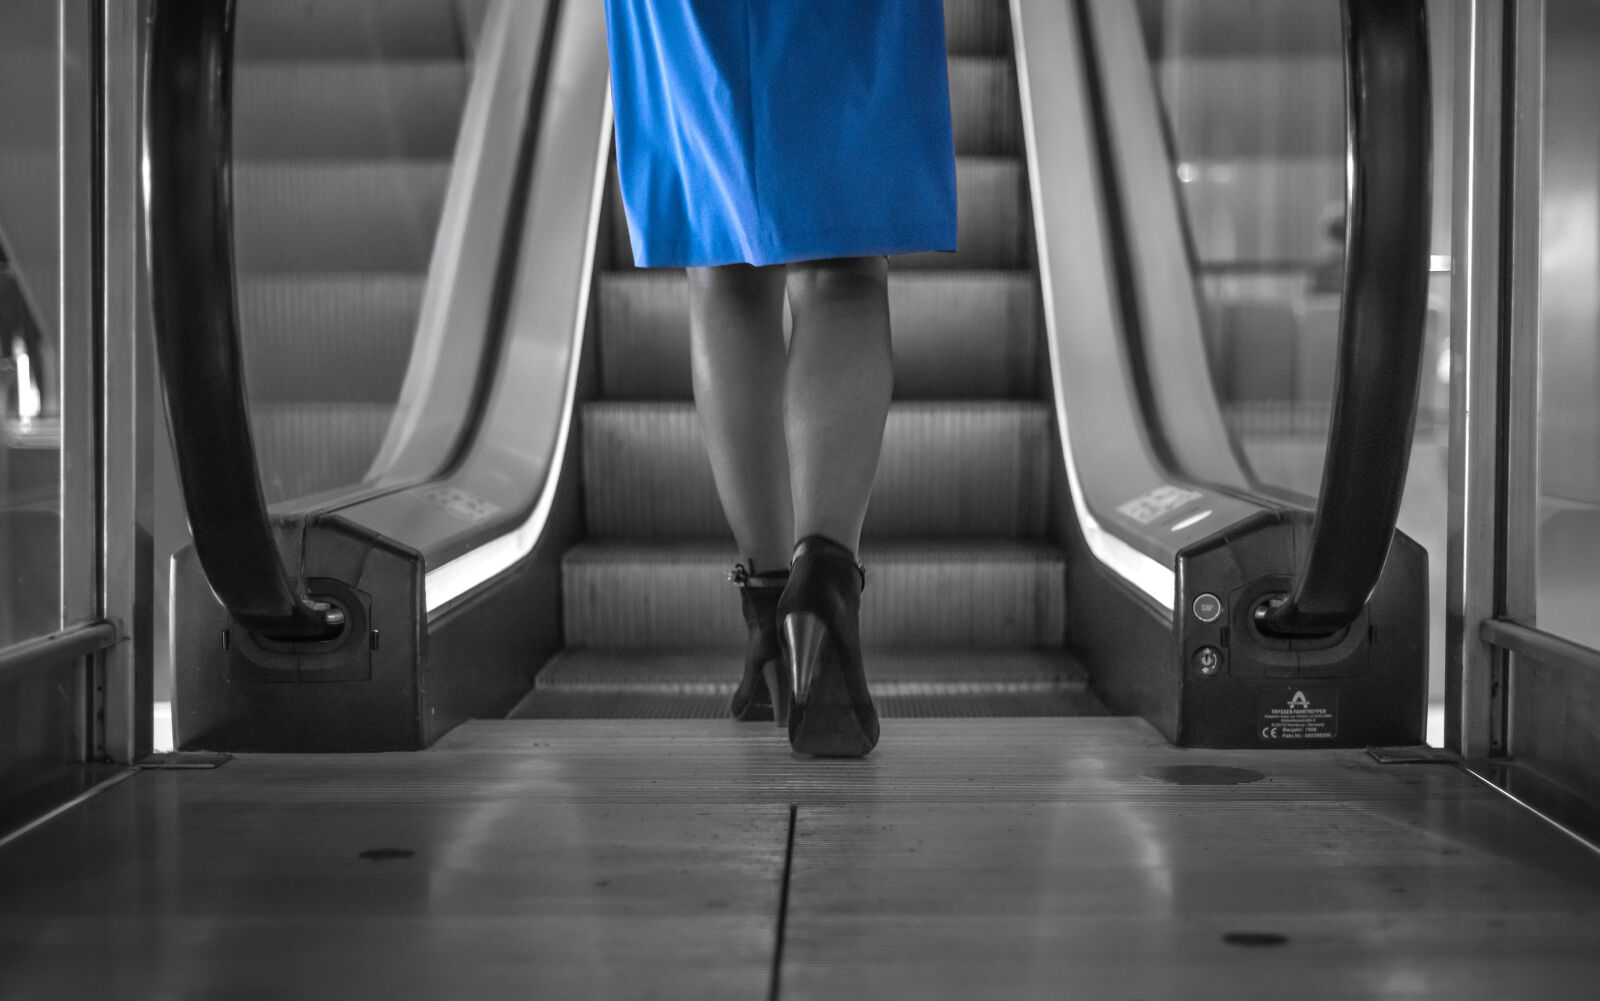 AF Nikkor 50mm f/1.8 sample photo. Blue, dress, escalator, shoes photography